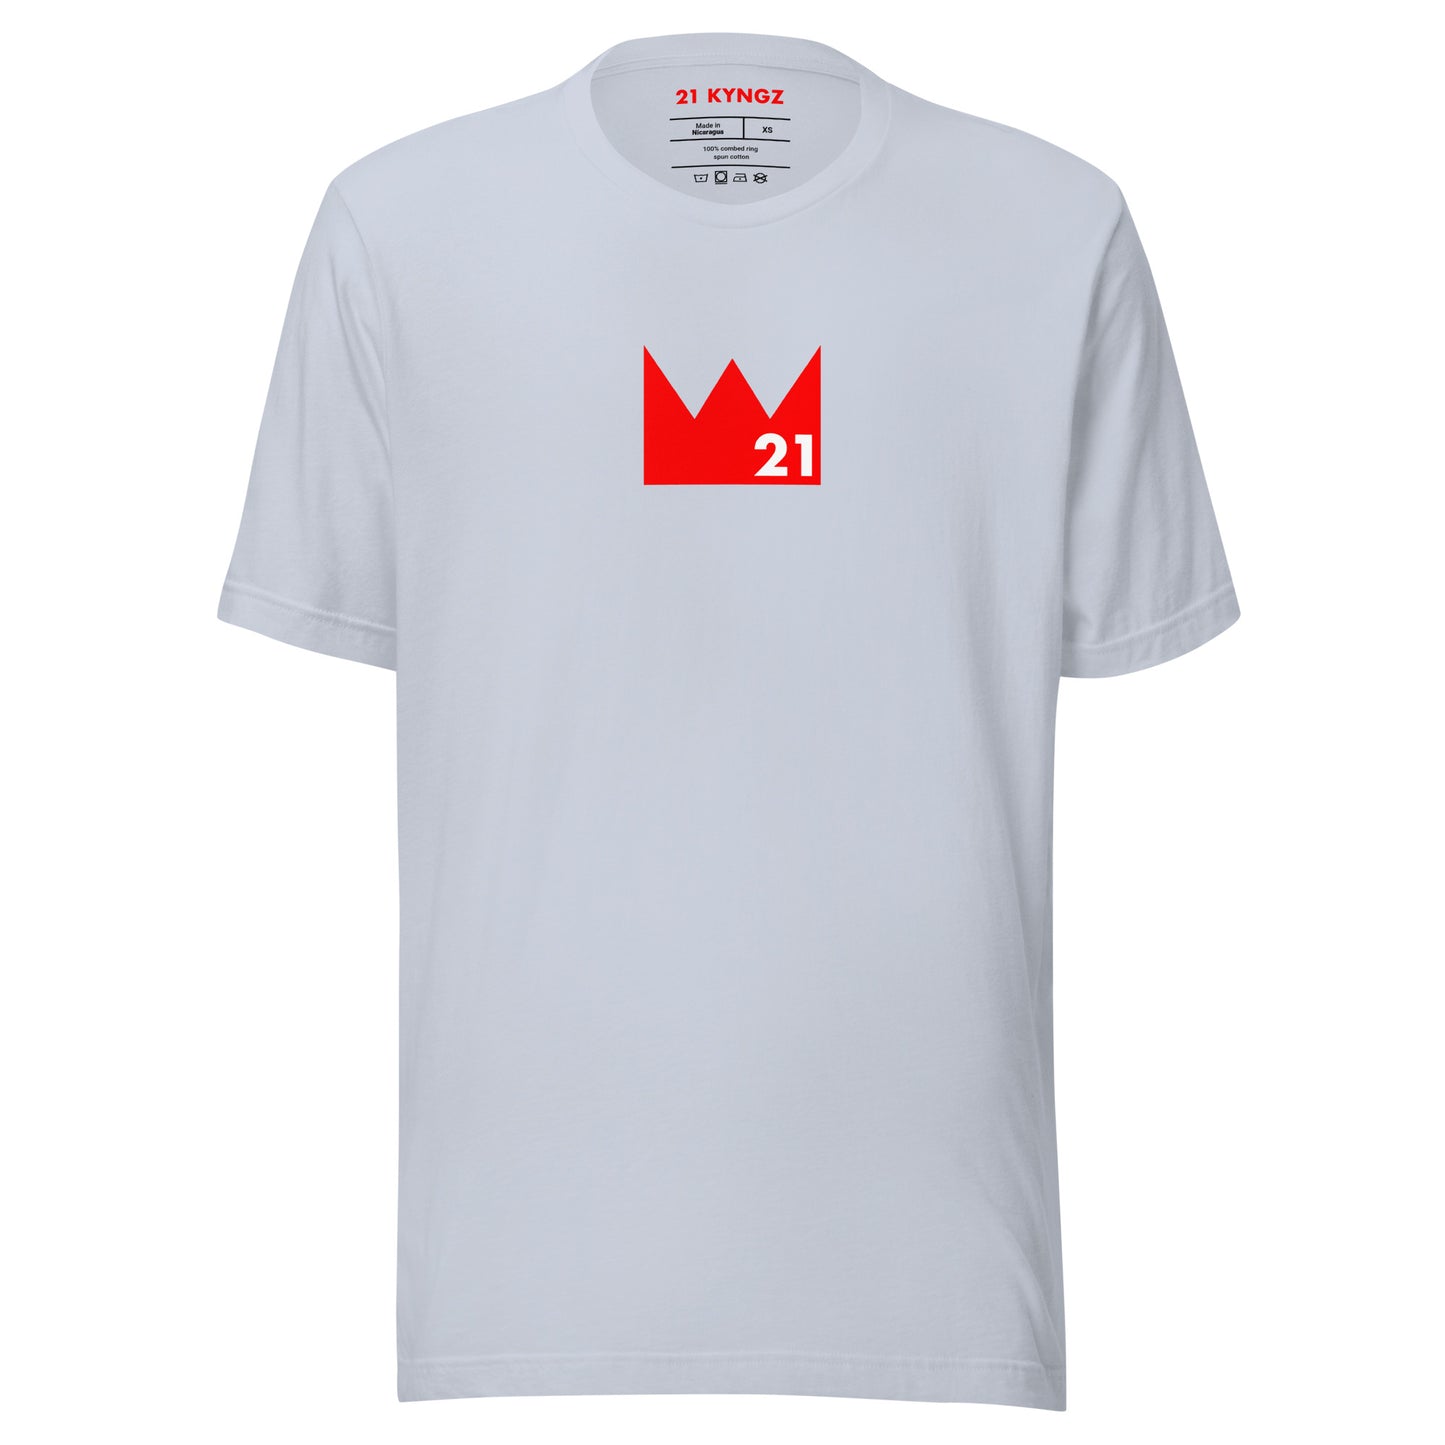 Crown 21 (R) T-shirt